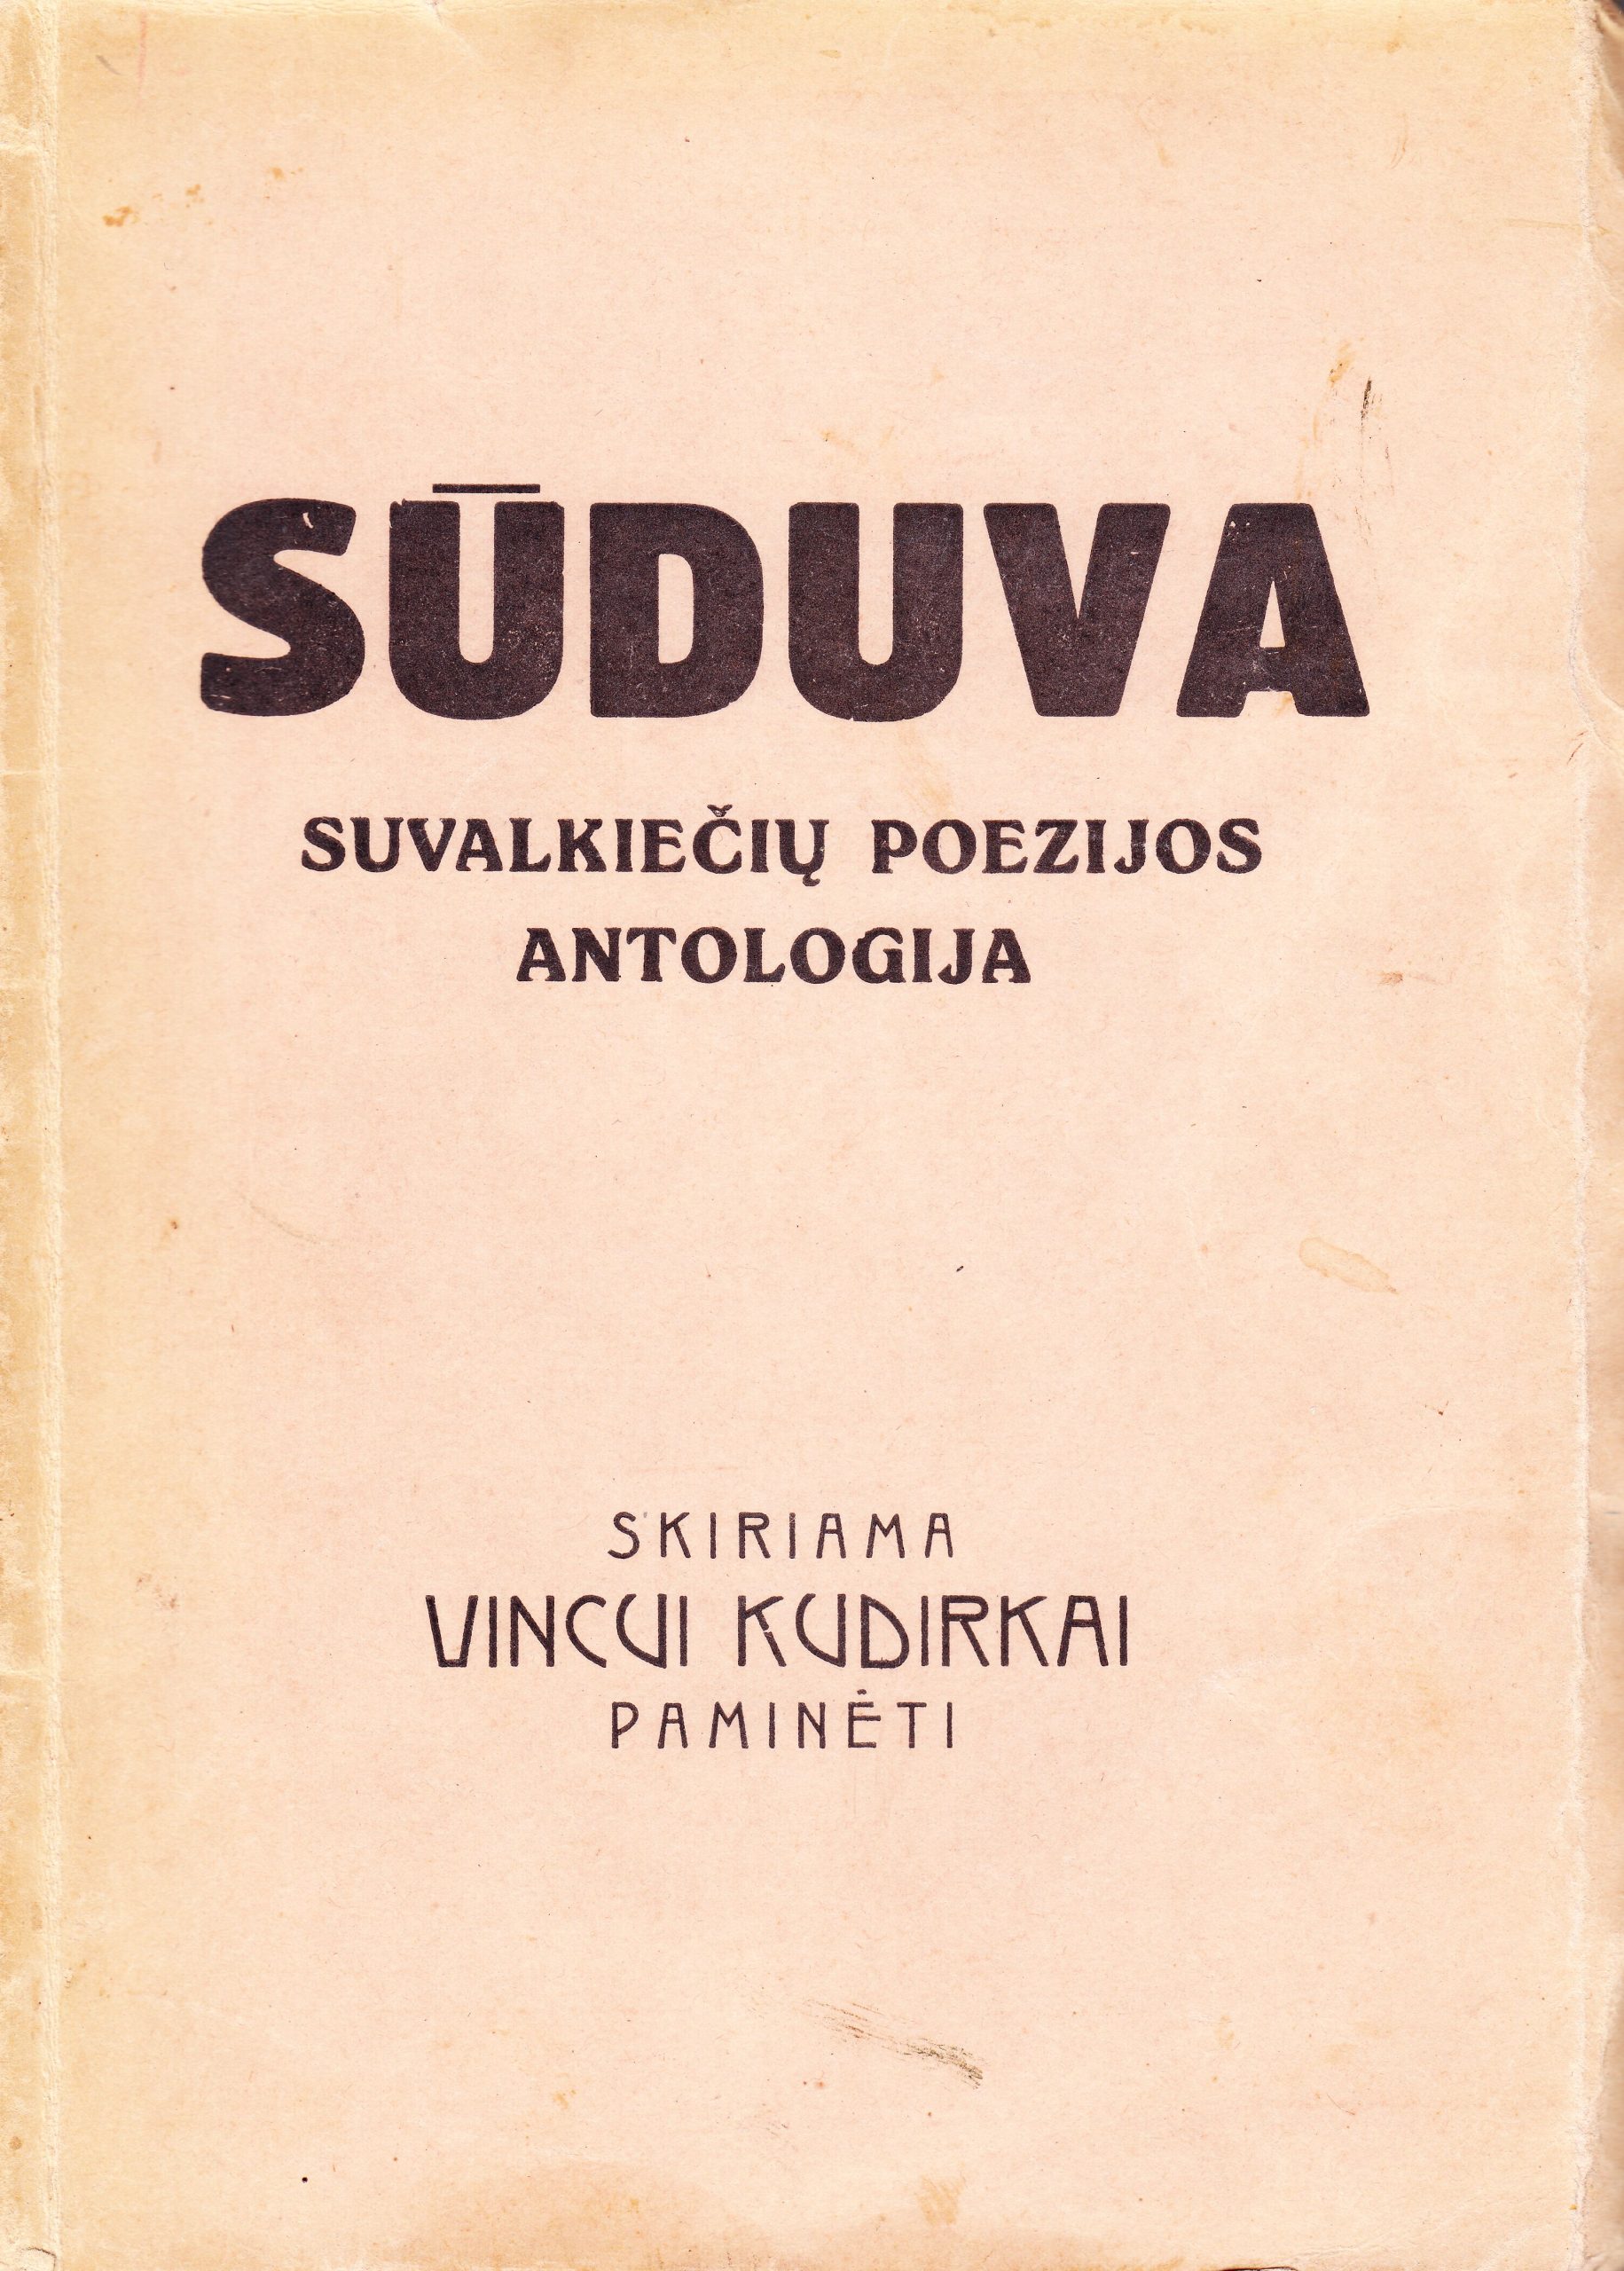 Antologija. Sūduva. 1924 m. MLLM 69197